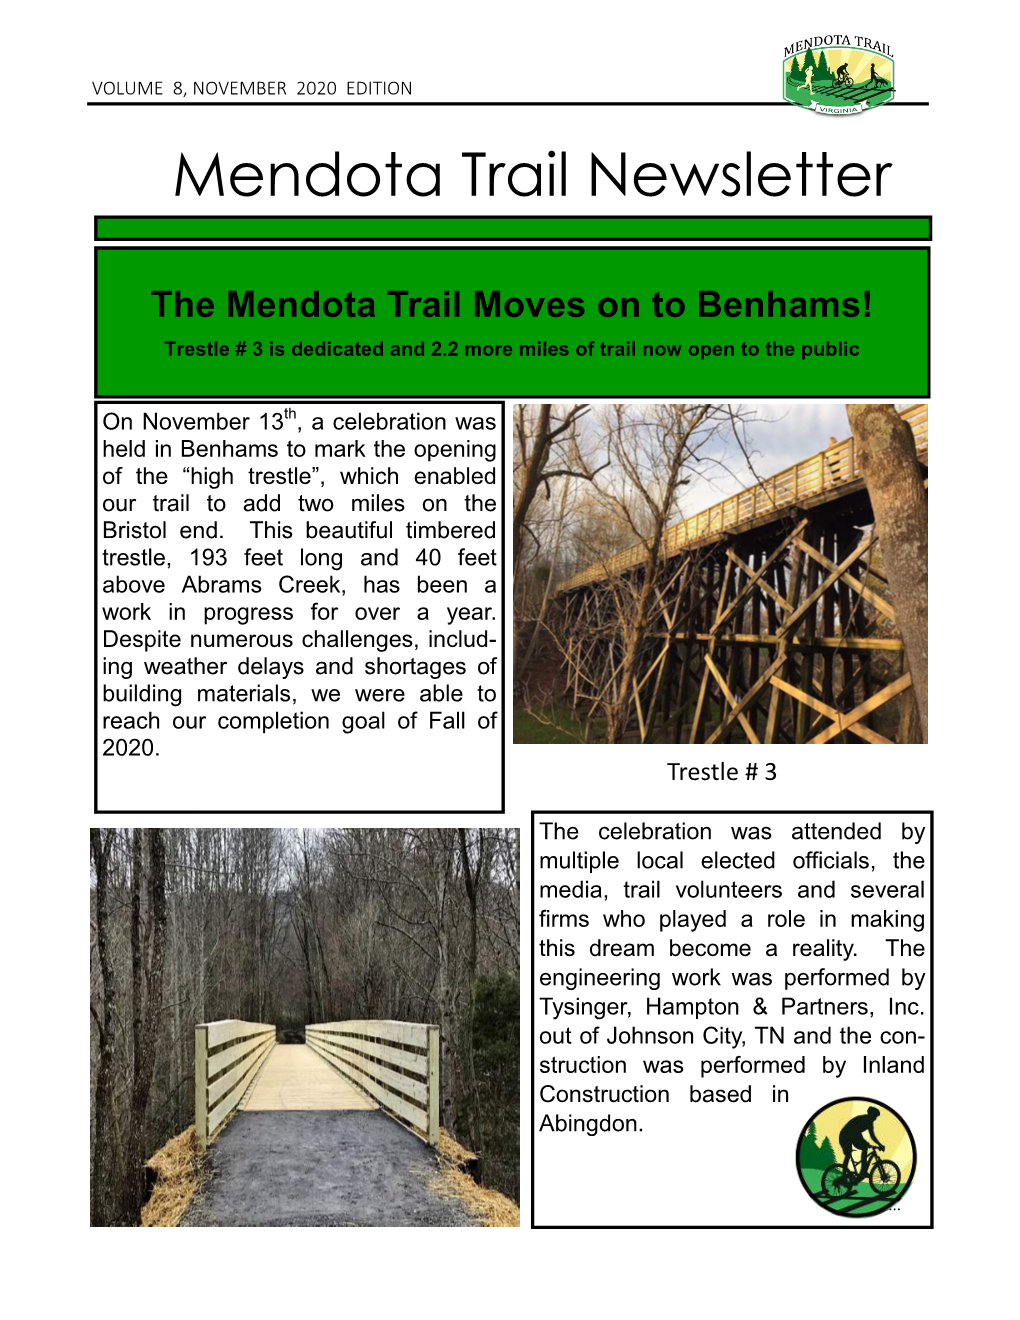 Mendota Trail Newsletter